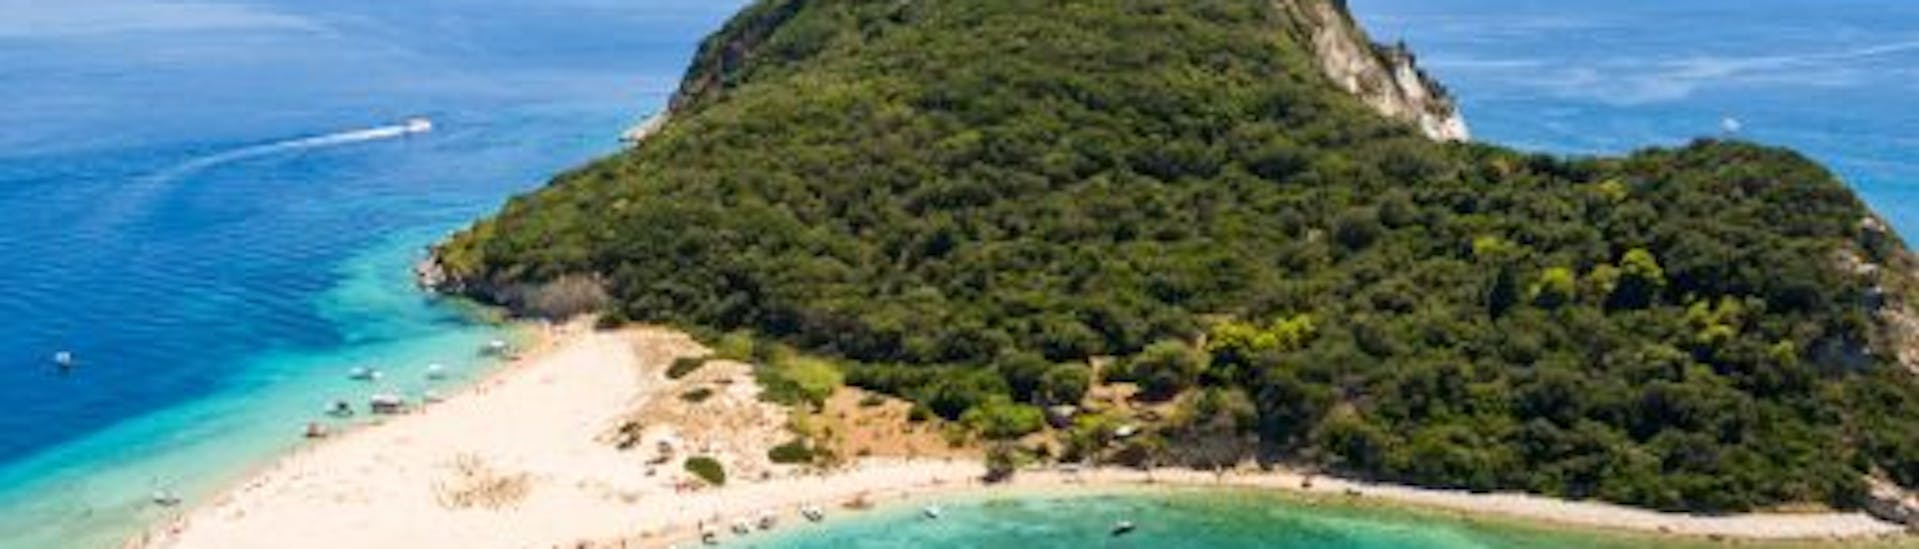 Boottocht van Agios Sostis naar Agios Sostis met wild spotten & toeristische attracties.